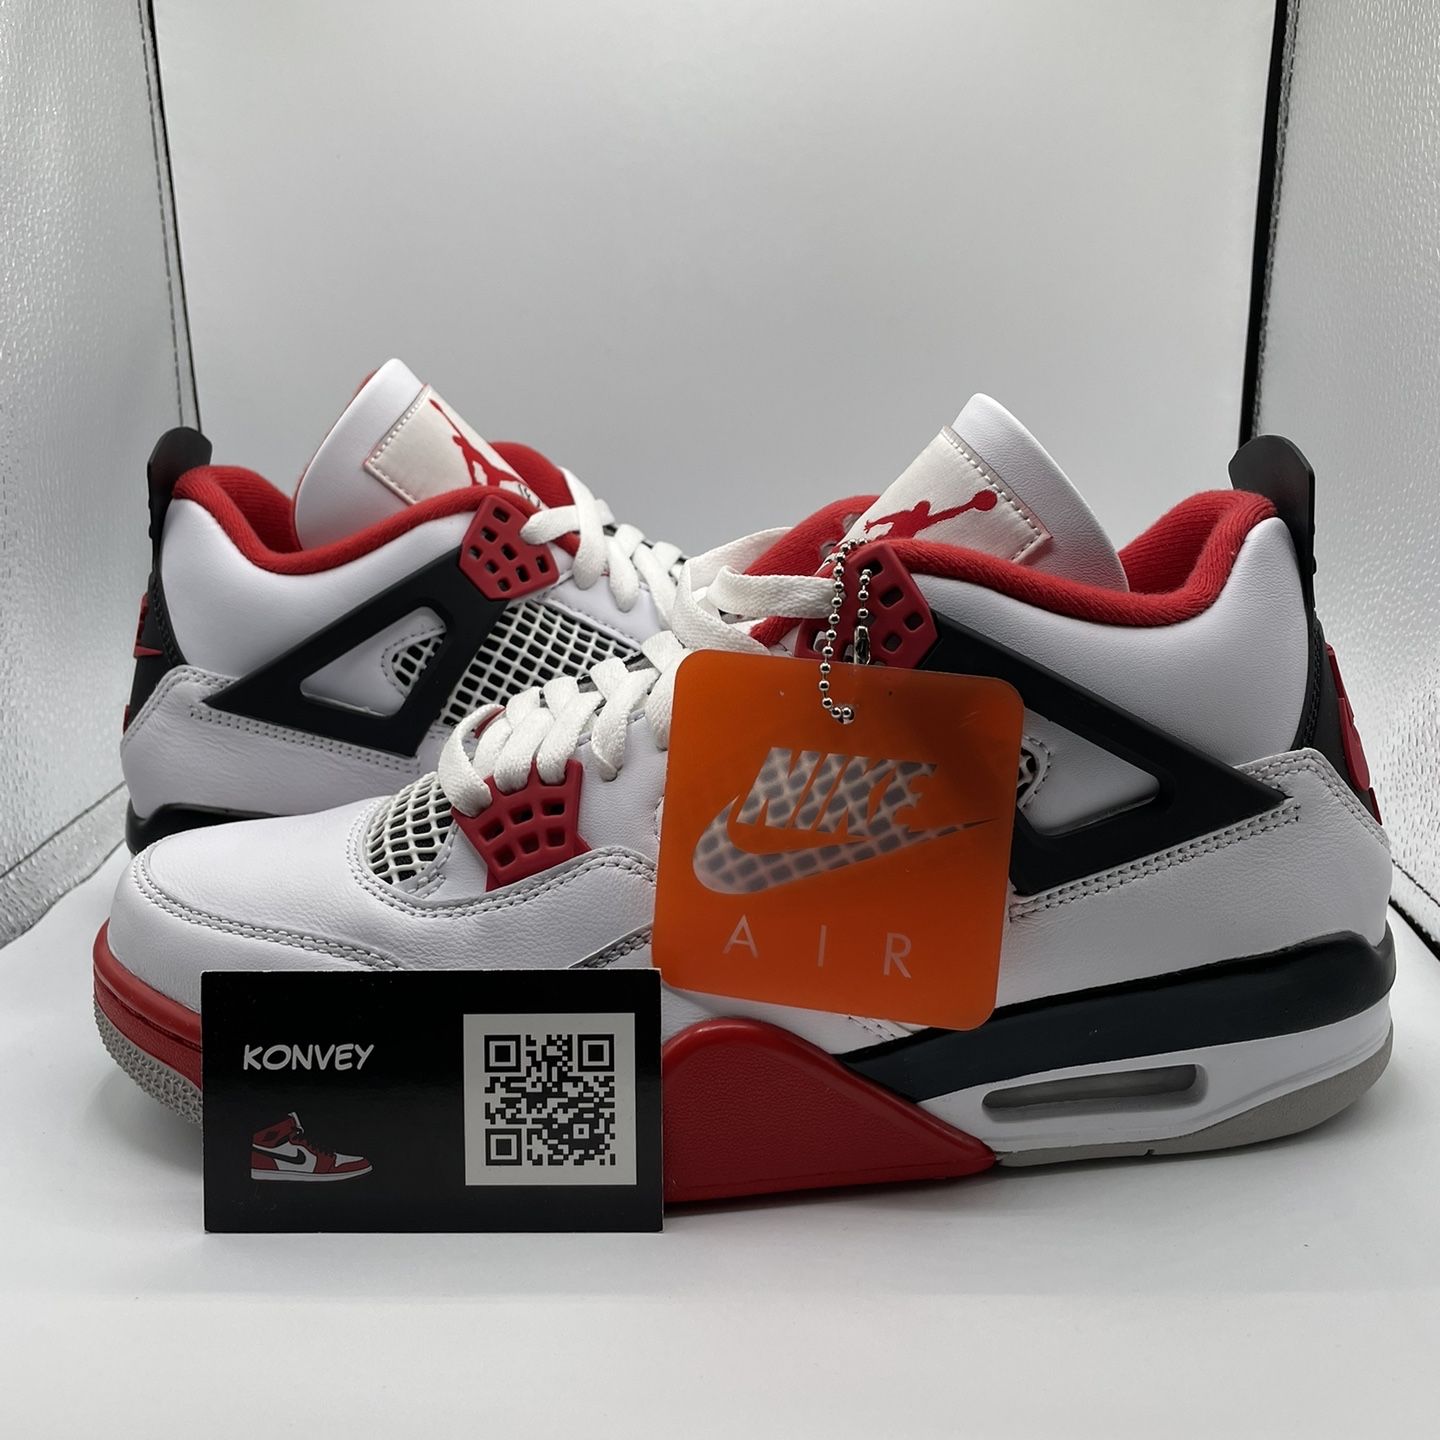 Air Jordan 4 Fire Red Size 9.5